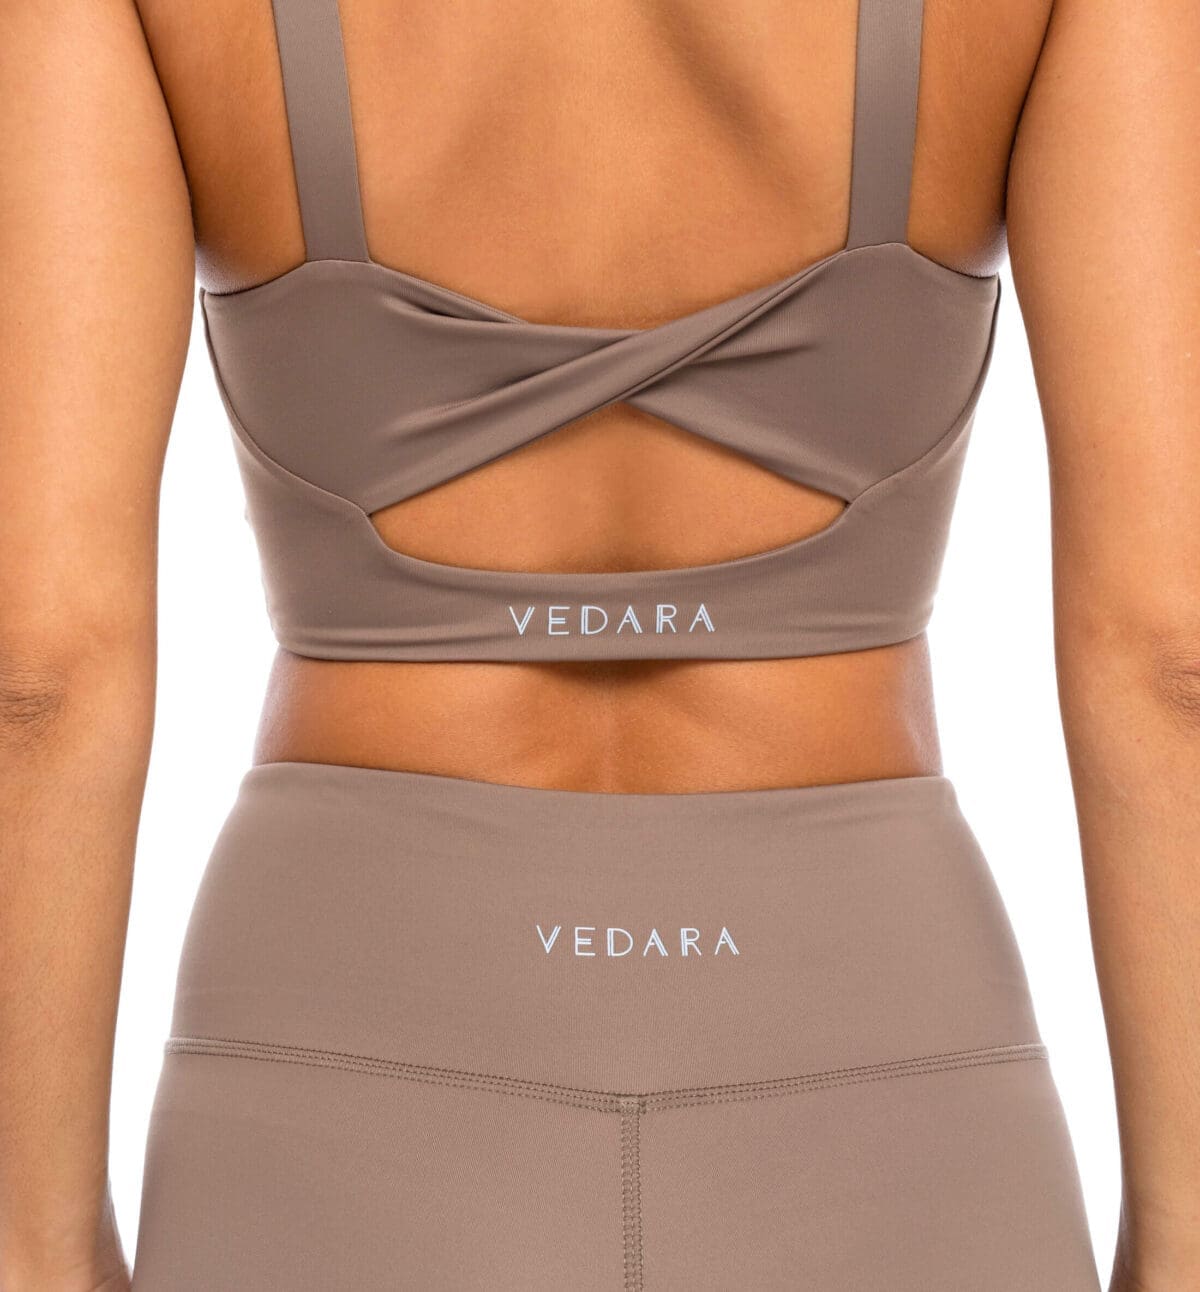 Yogawear, Activewear in Taupe mit Vedara Logo